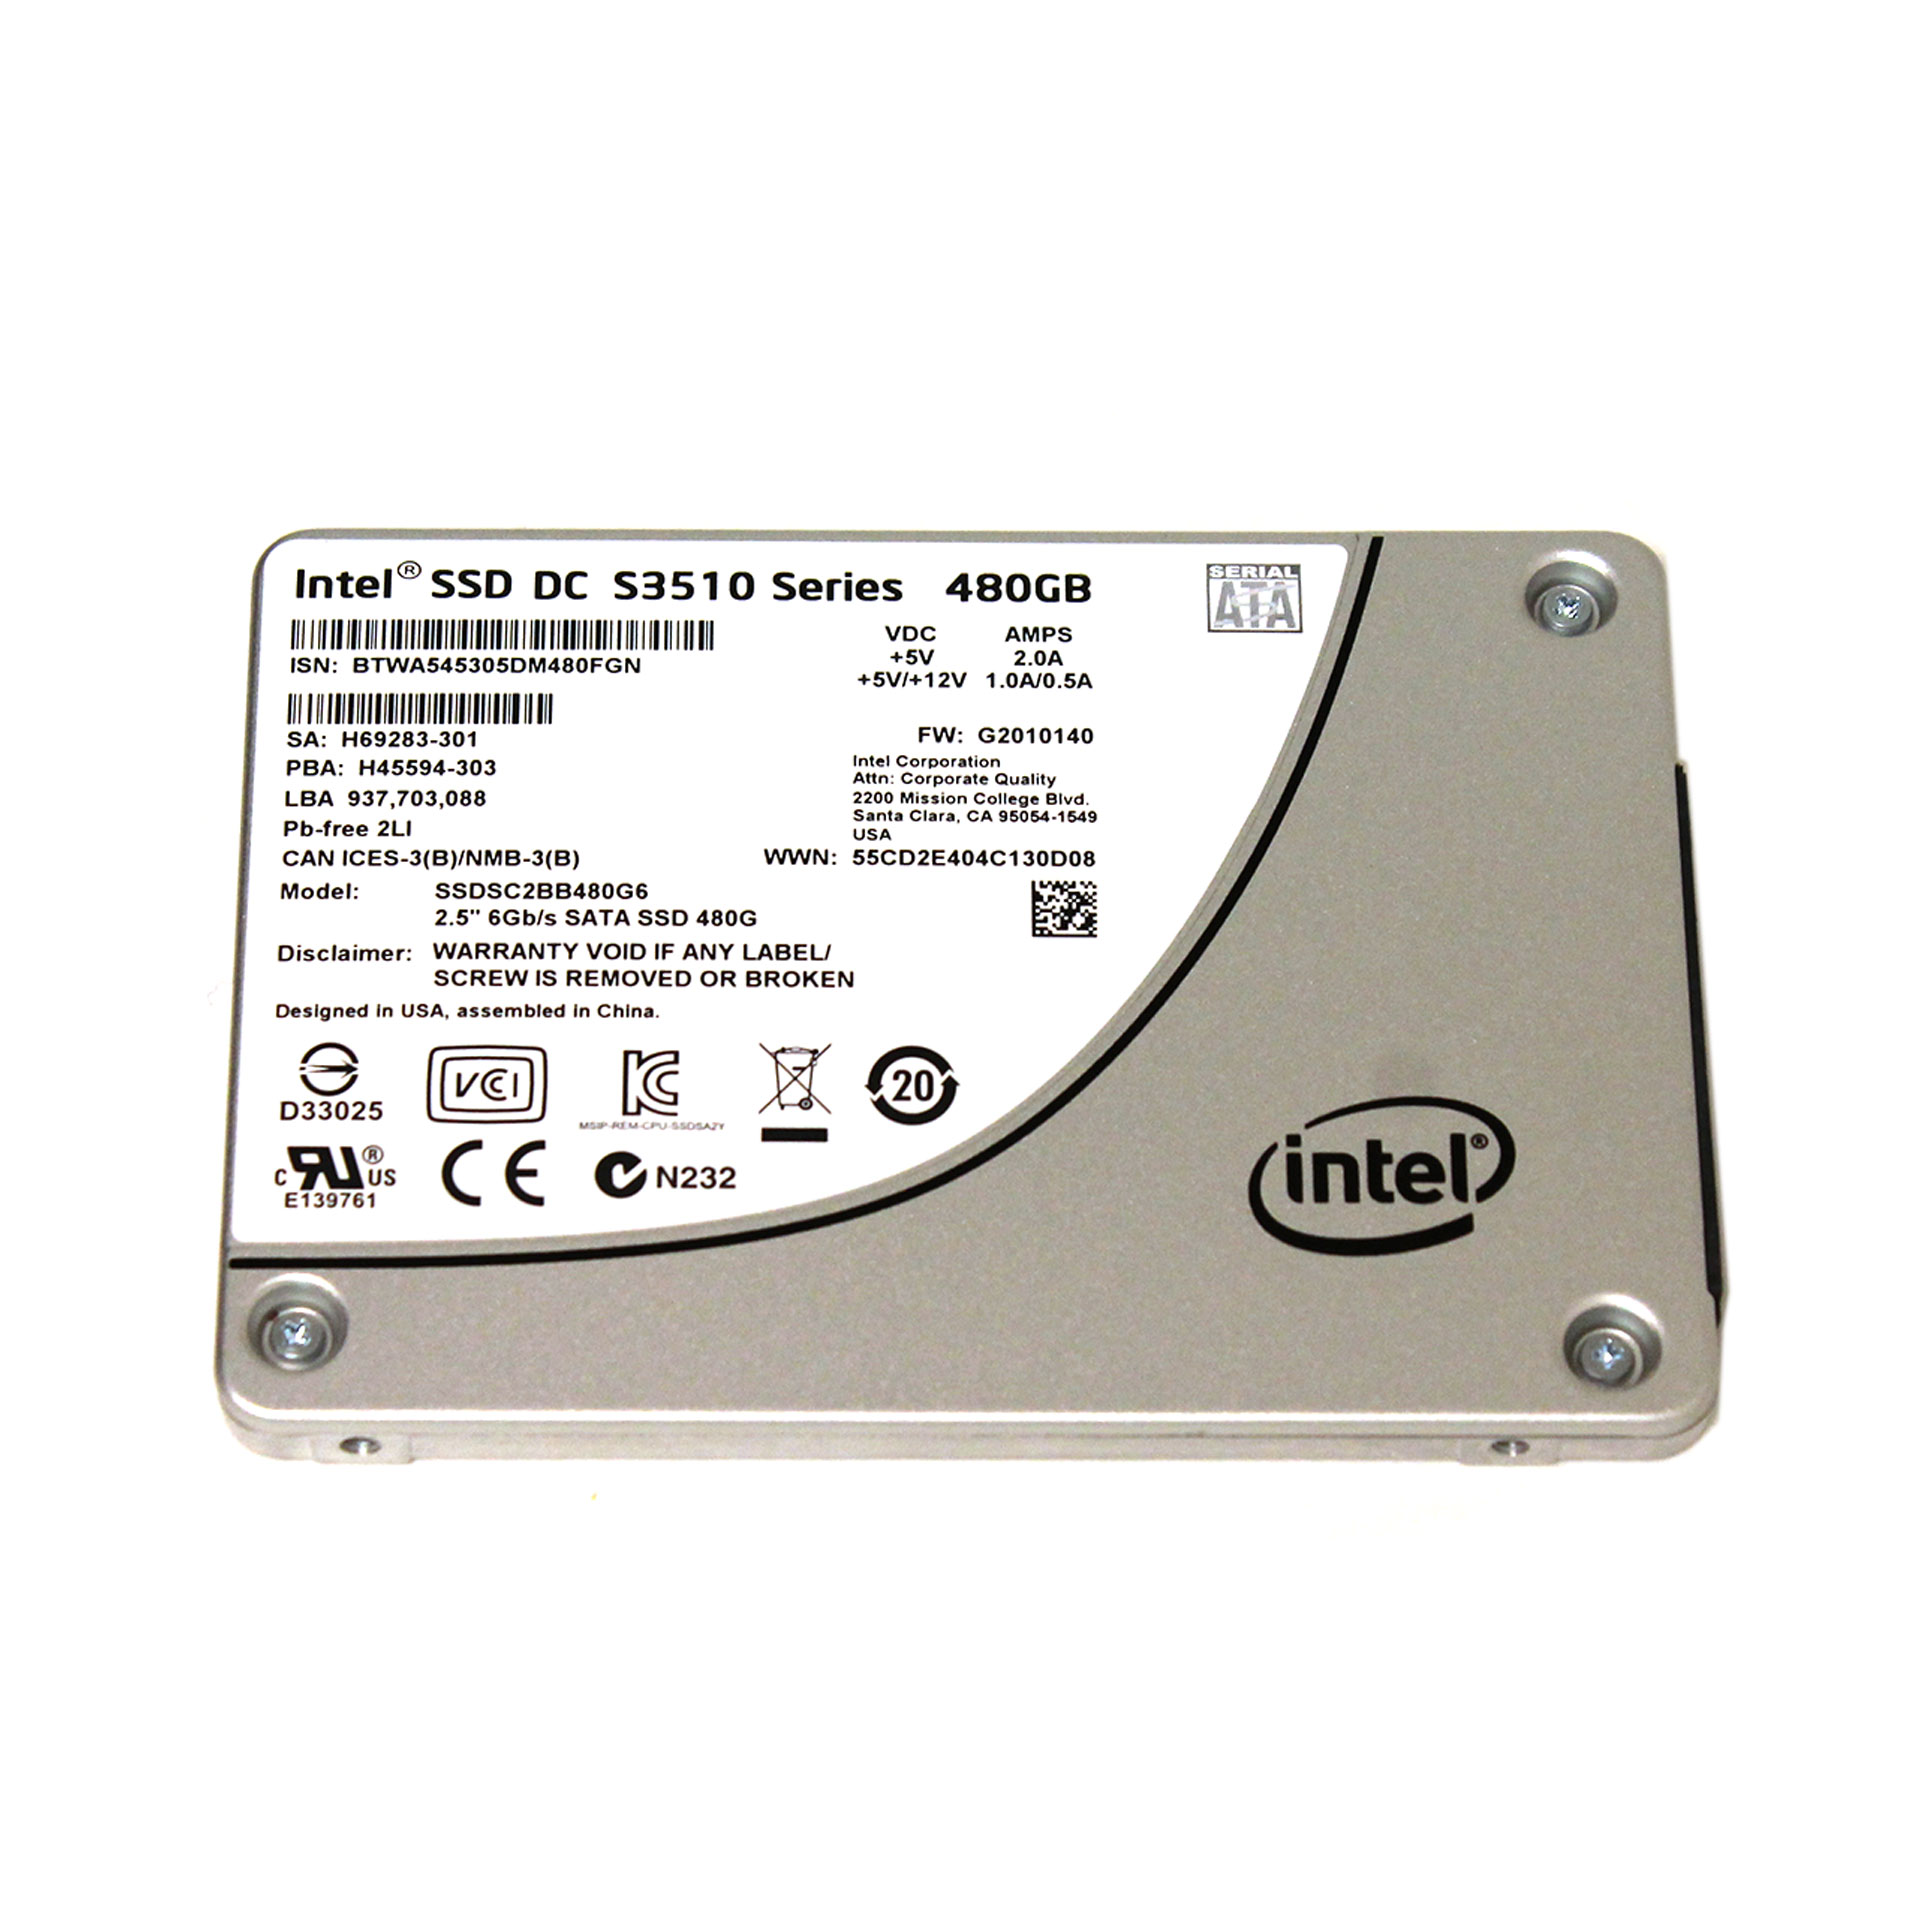 Intel SSDSC2BB480G6 DC S3510 SERIES 480 GB 2.5 6GB/S SATA SSD - Click Image to Close